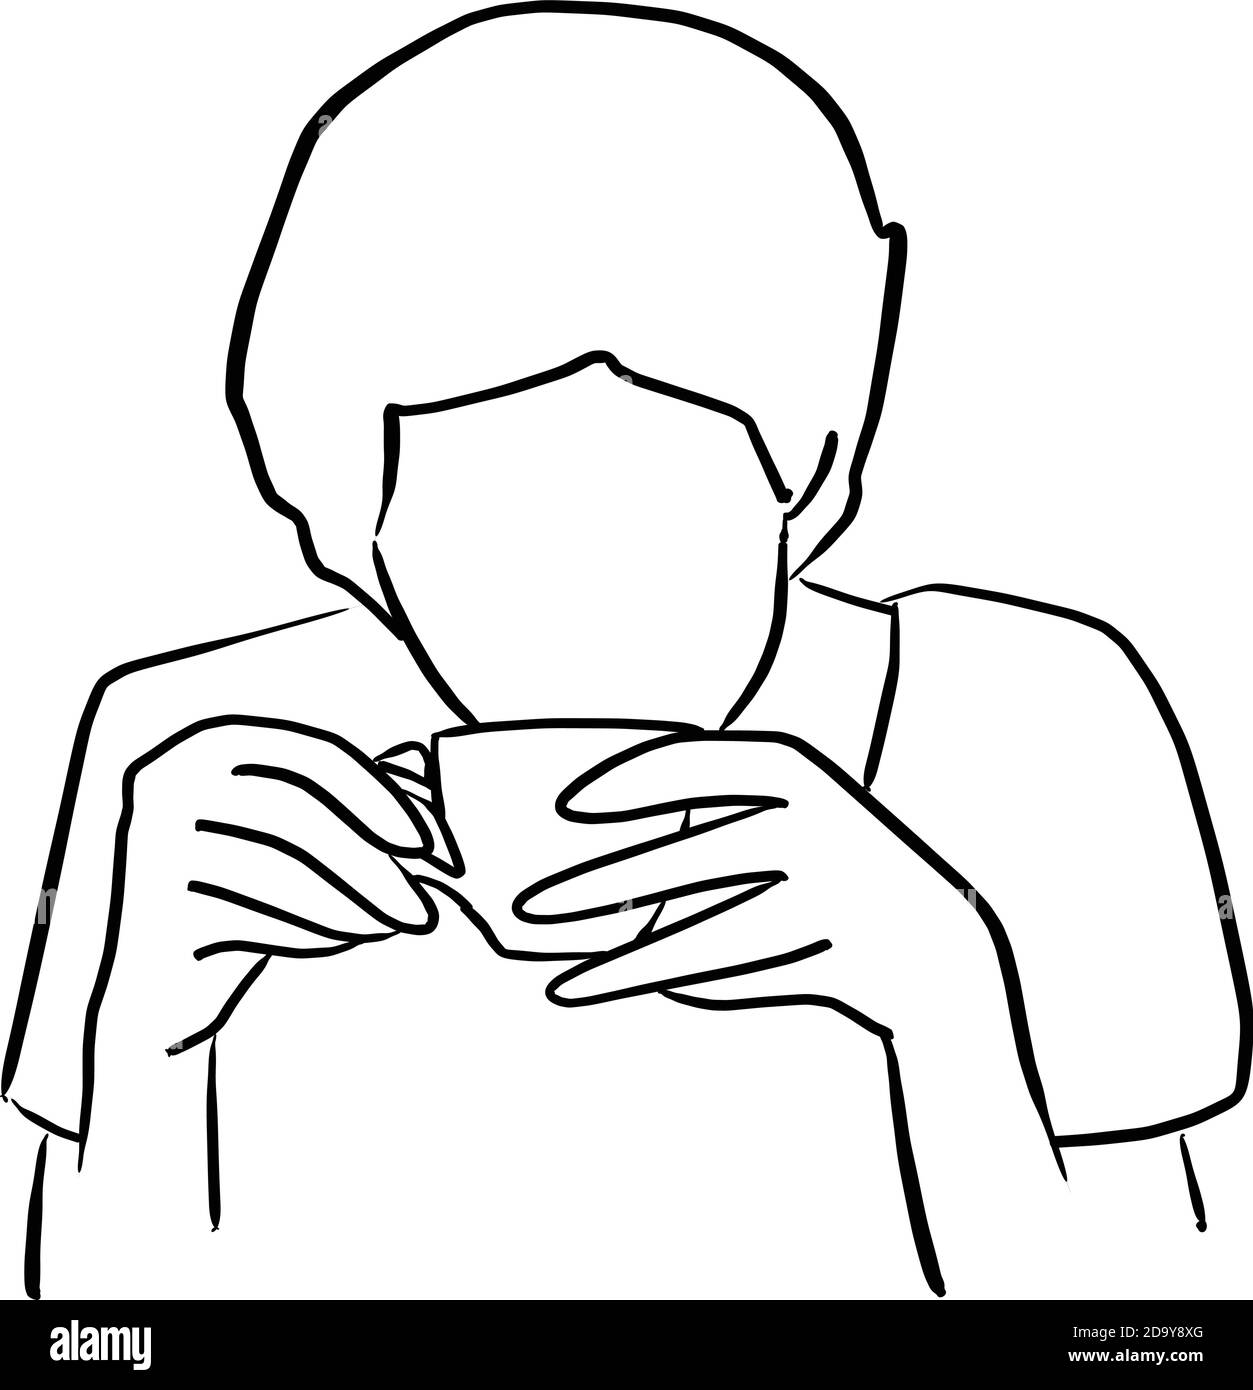 donna che beve caffè dalla tazza vettore illustrazione schizzo doodle disegnata a mano con linee nere isolate su sfondo bianco Illustrazione Vettoriale